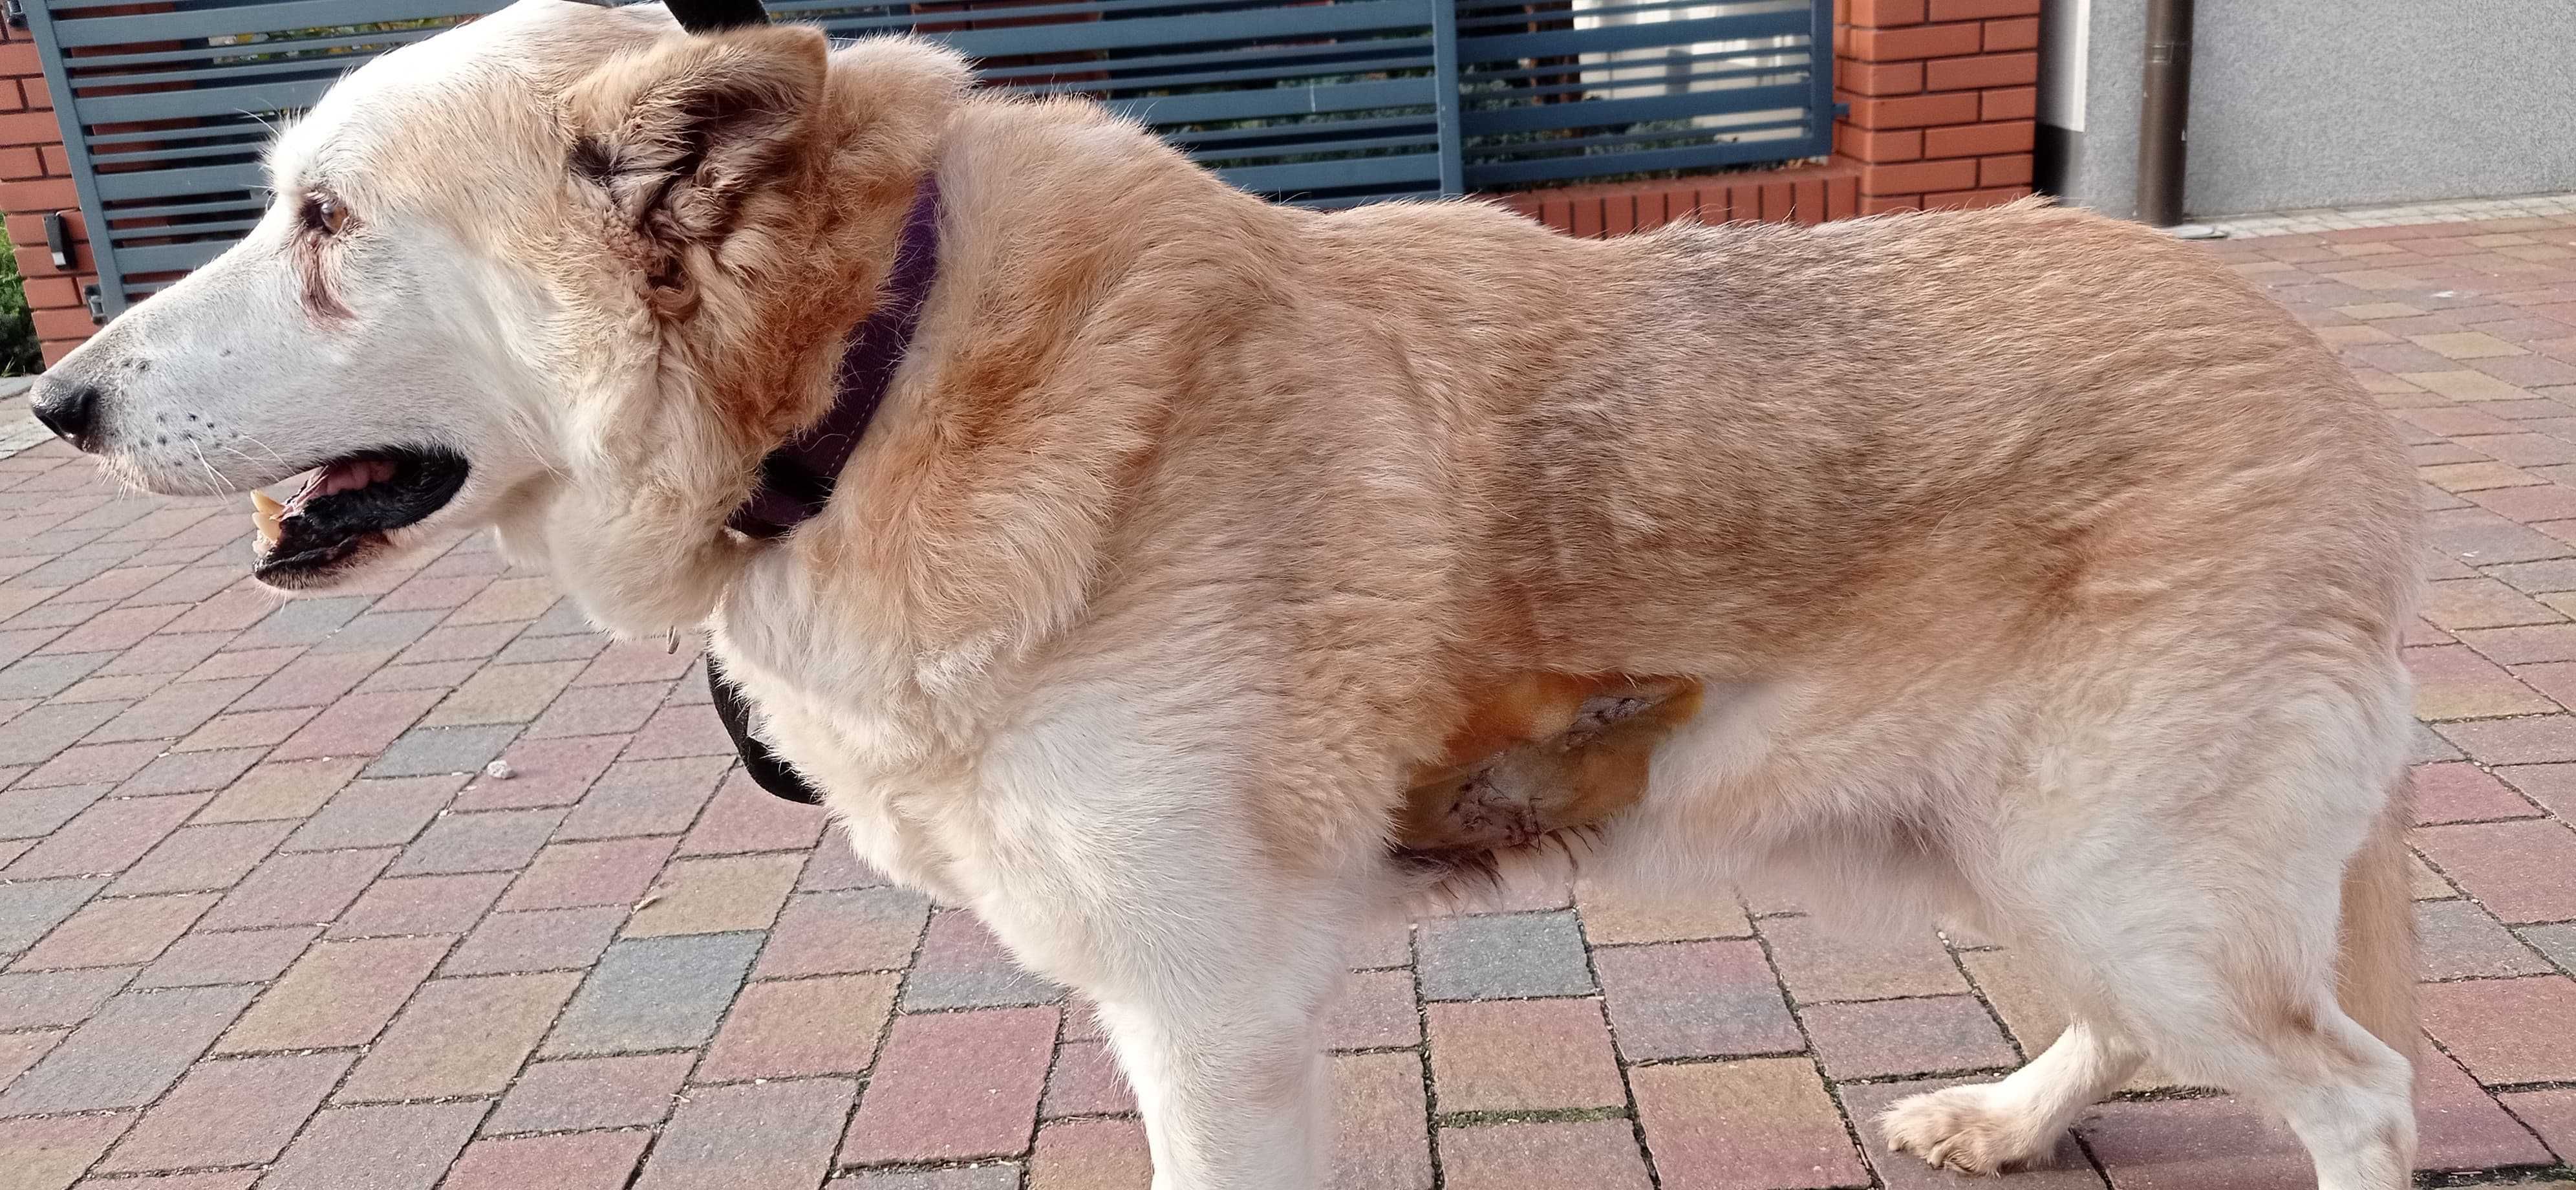 Nuki pies po przejściach - pilnie potrzebuje domu na jesień życia